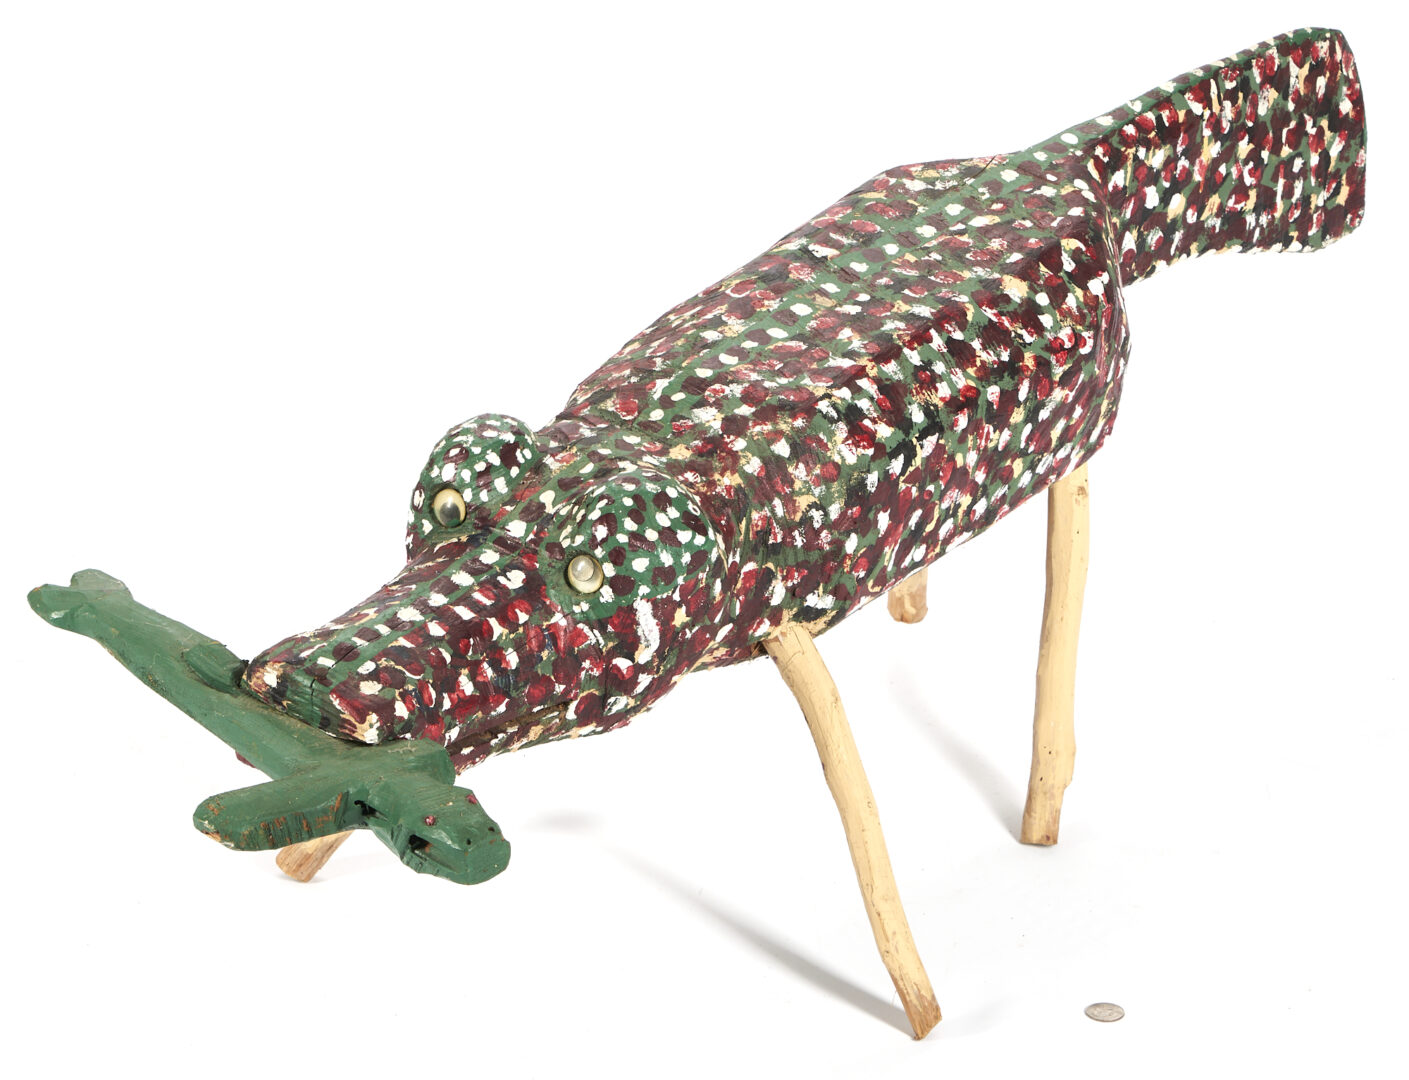 Lot 335: Homer Green Folk Art Sculpture, Alligator